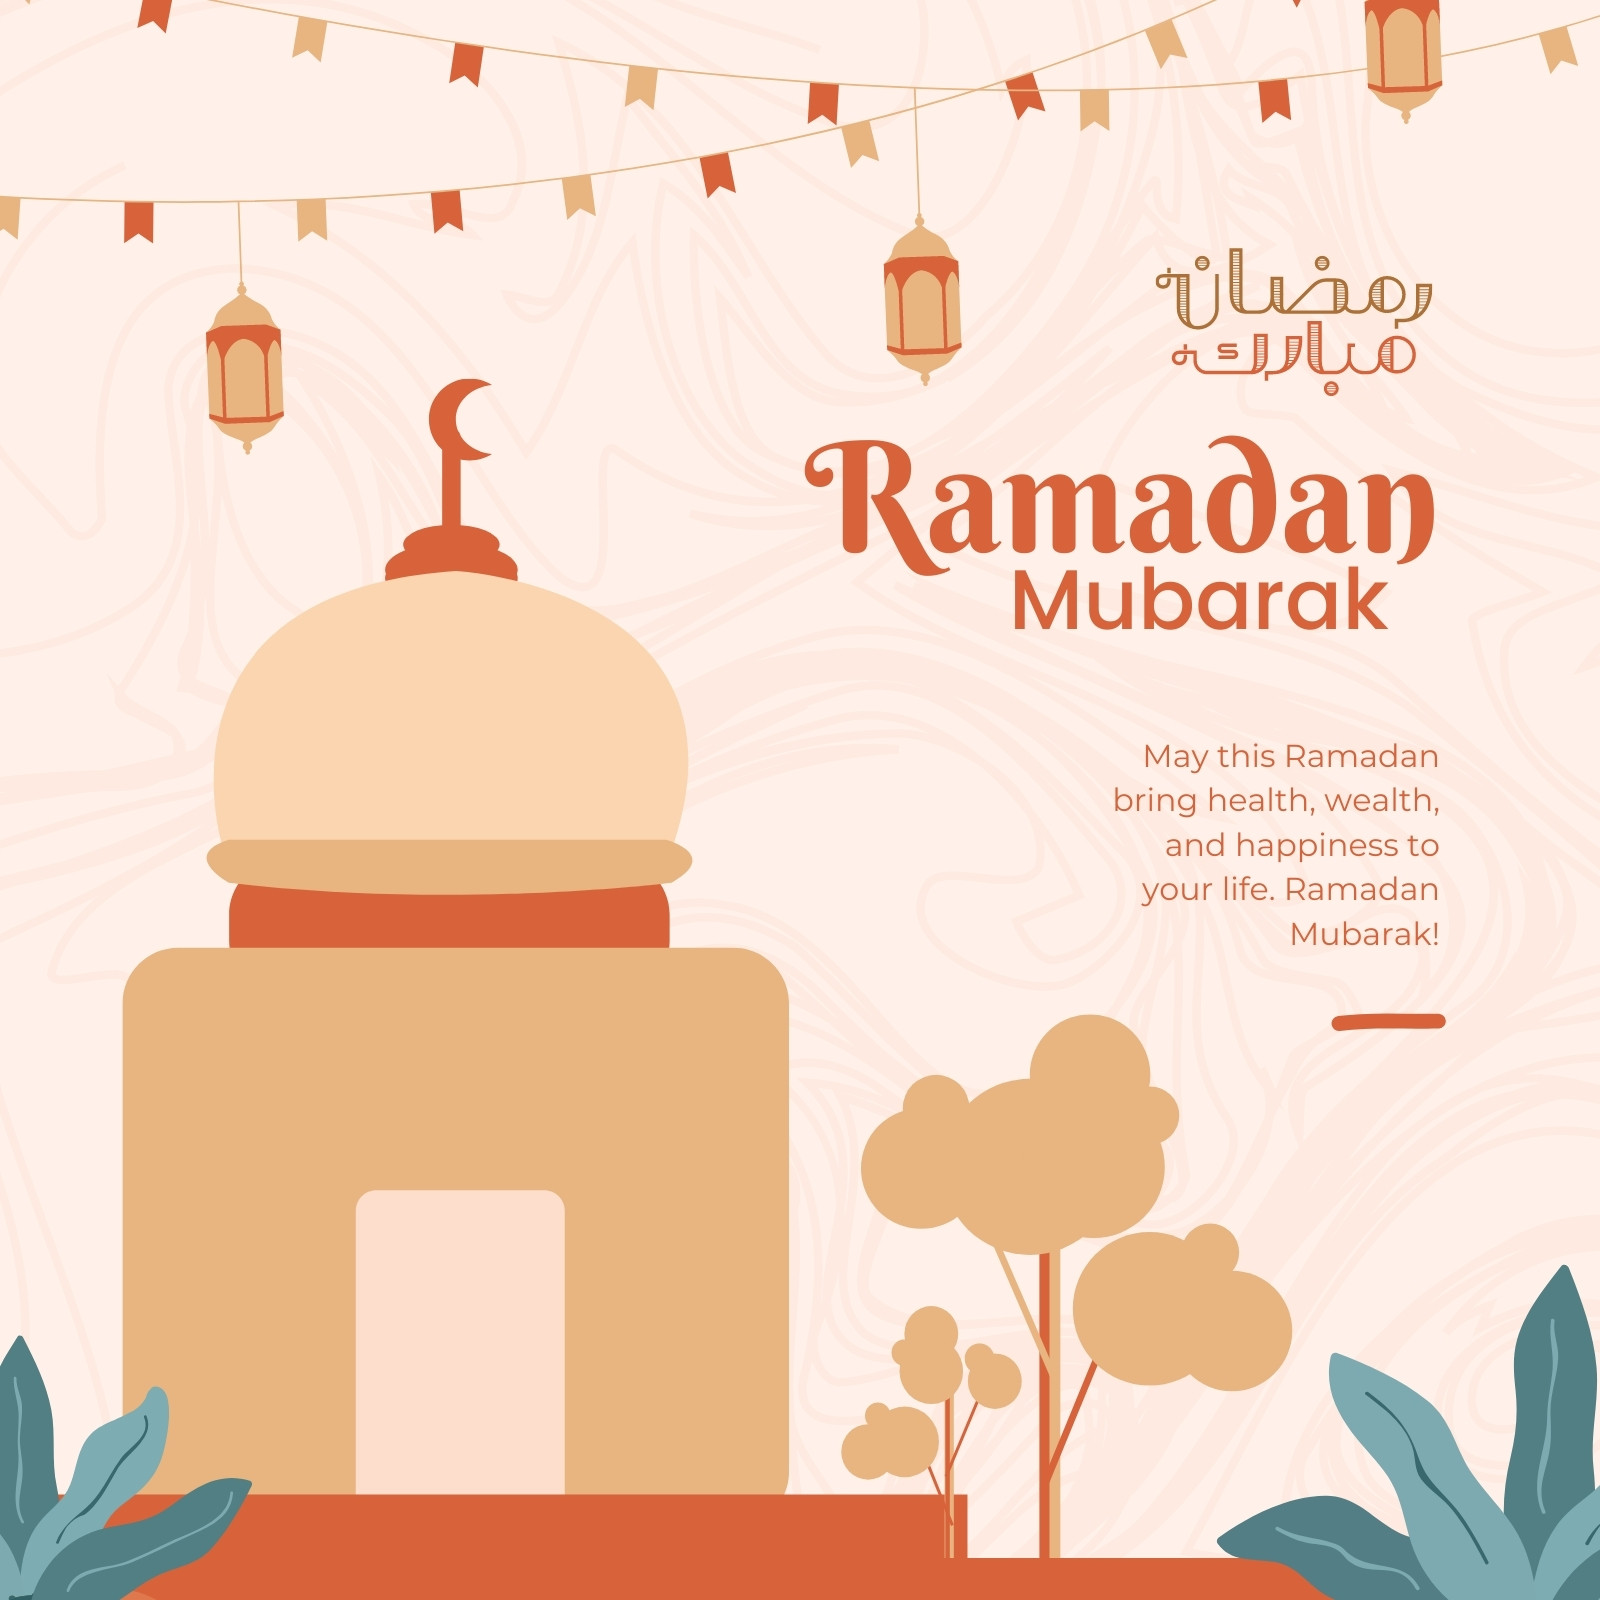 Trang 4 là thiên đường của những thiết kế Ramadan mubarak miễn phí và có thể tùy chỉnh. Hãy điểm qua những mẫu thiết kế tuyệt đẹp và tạo nên những thiết kế độc đáo riêng cho mình.